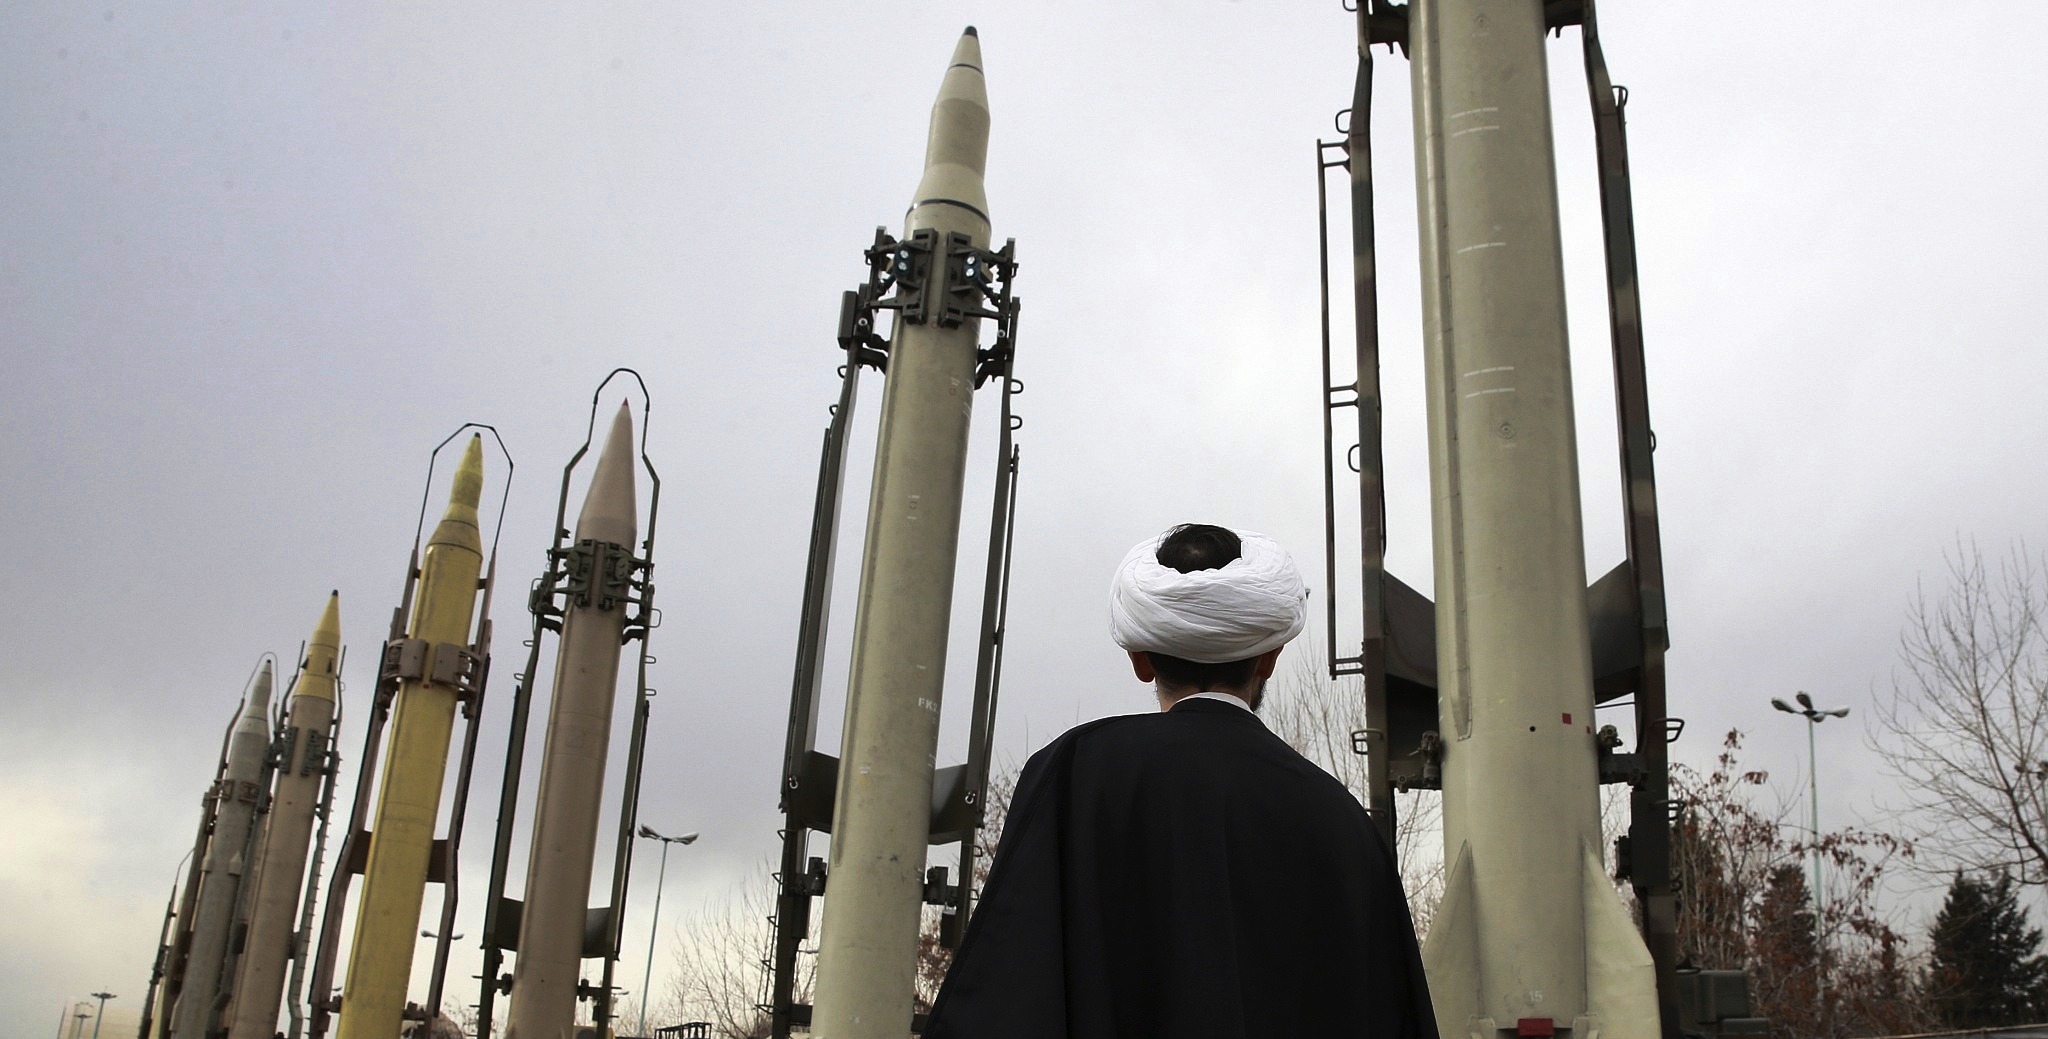 Επίθεση Ιράν σε αμερικανική βάση: Οι πύραυλοι που χτύπησαν το Ιράκ